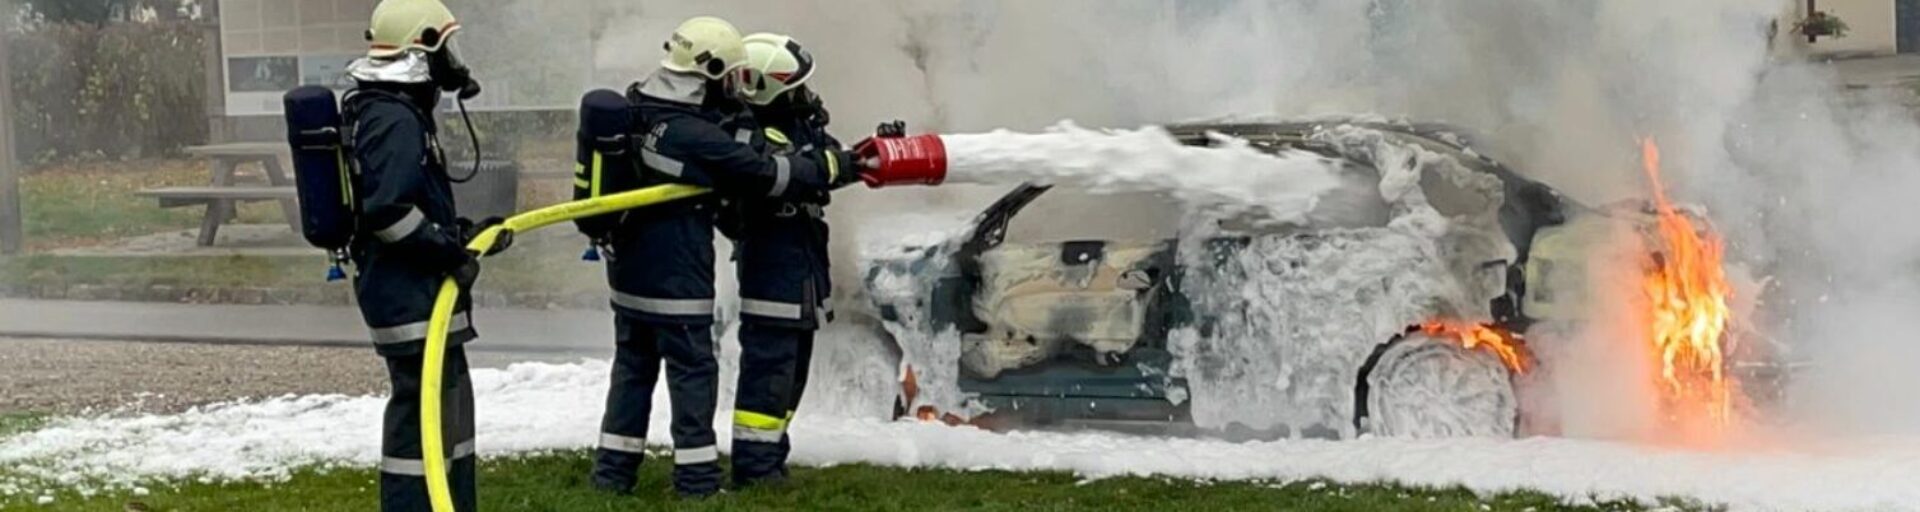 (c) Feuerwehr-sierndorf.at